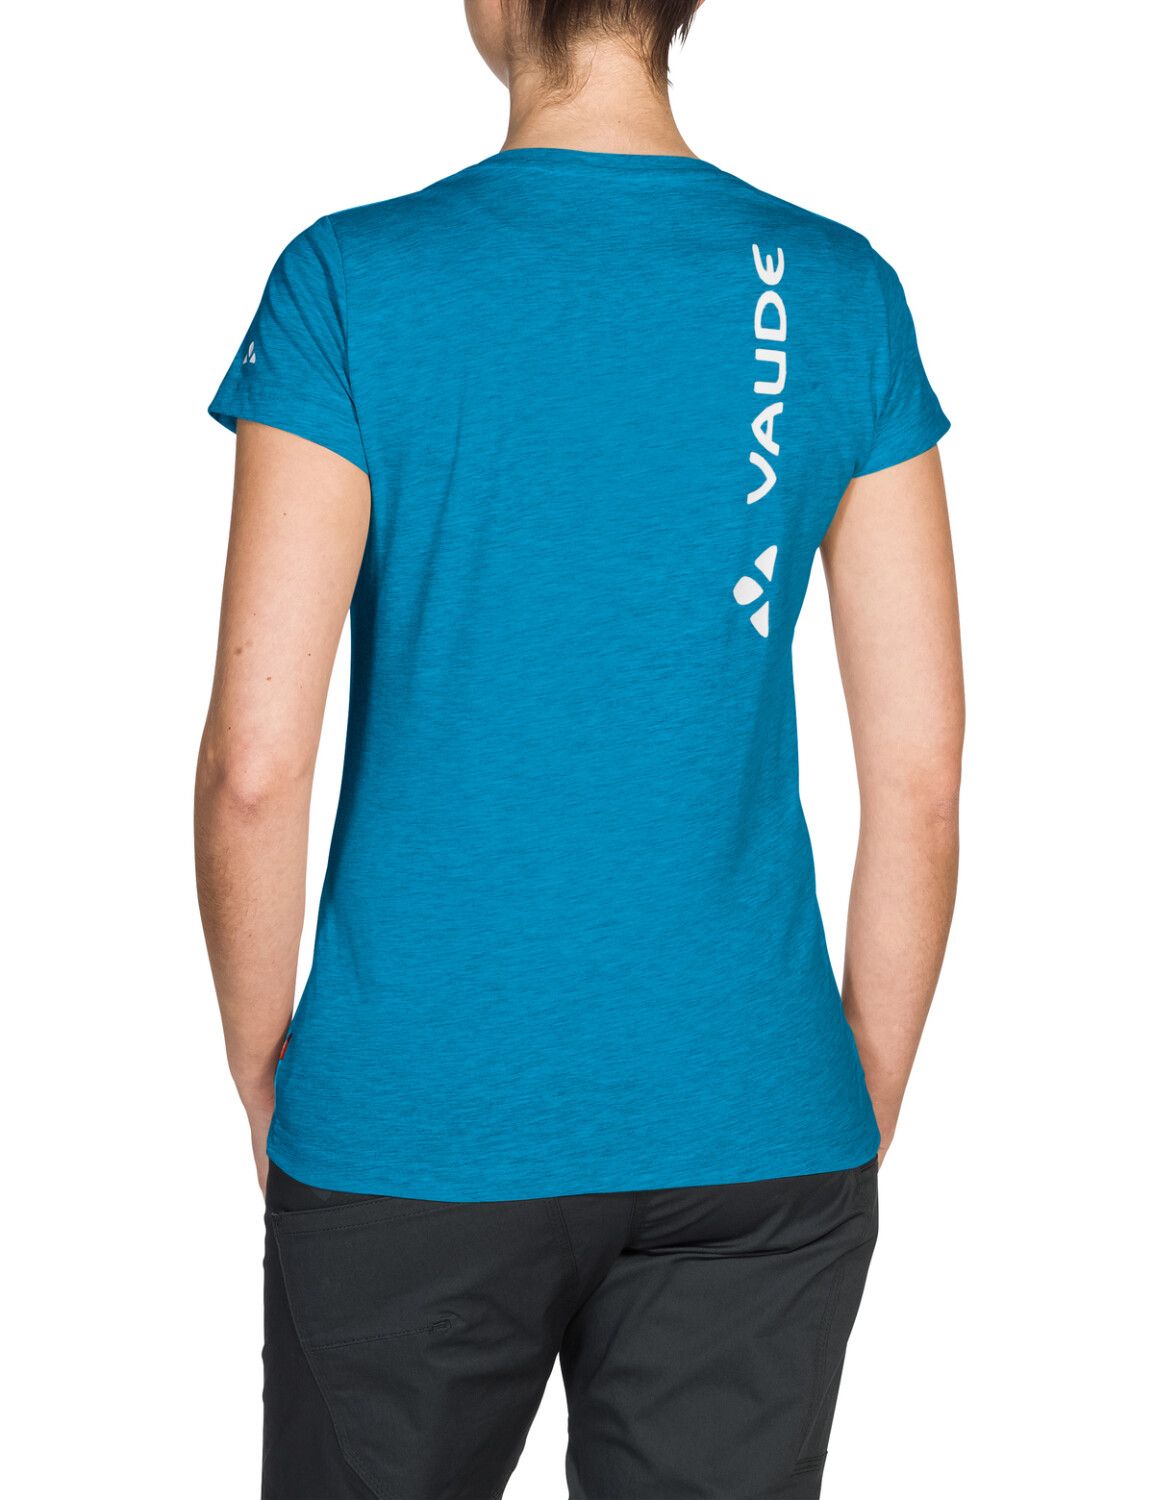 VAUDE Women's Brand Shirt (Bild 15)